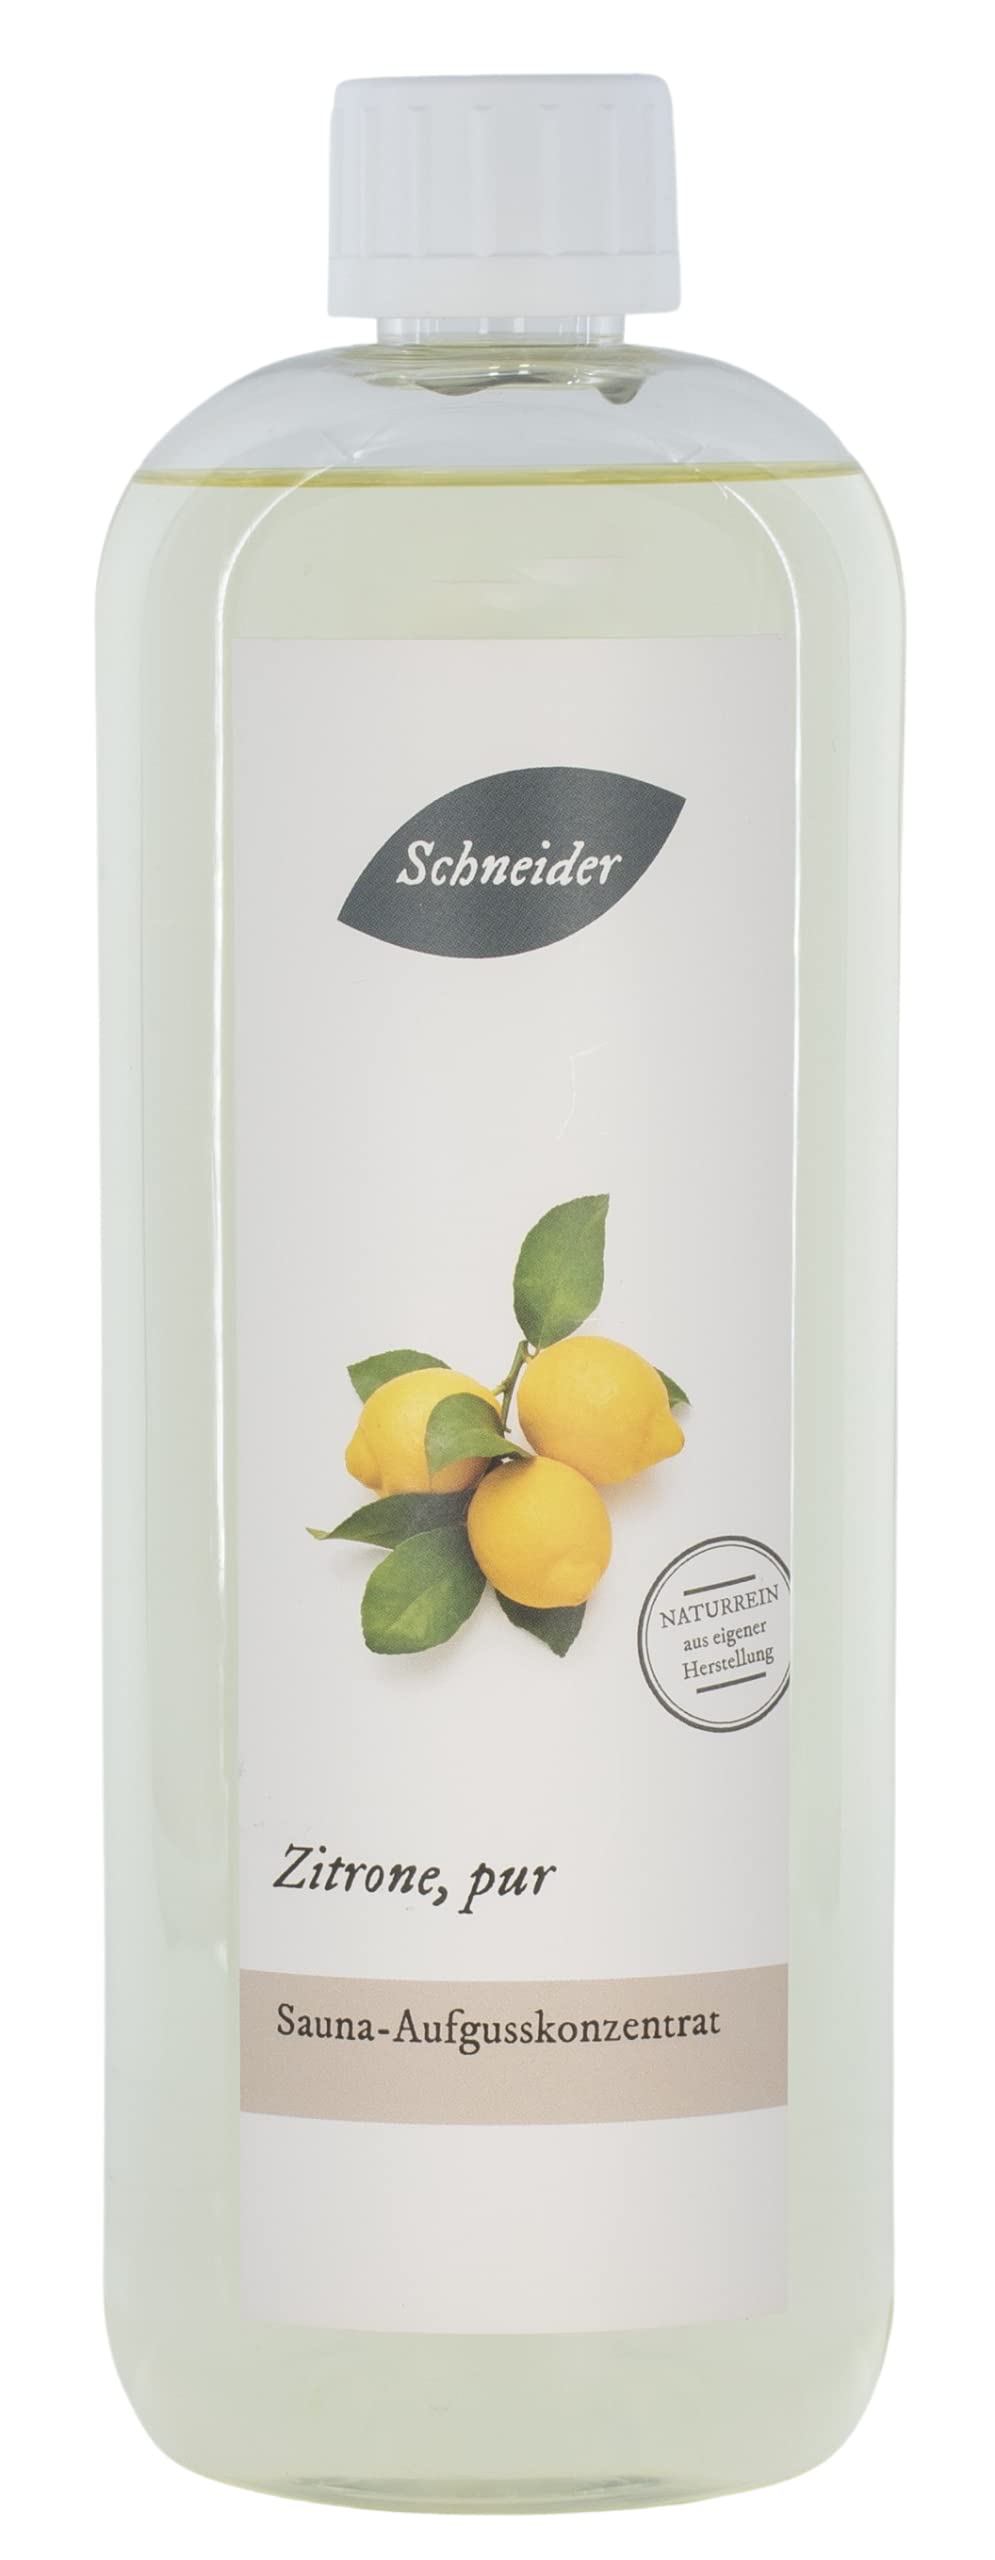 Saunabedarf Schneider - Aufgusskonzentrat Zitrone Pur - frischer, fruchtig-spritziger Saunaaufguss - 1000ml Inhalt